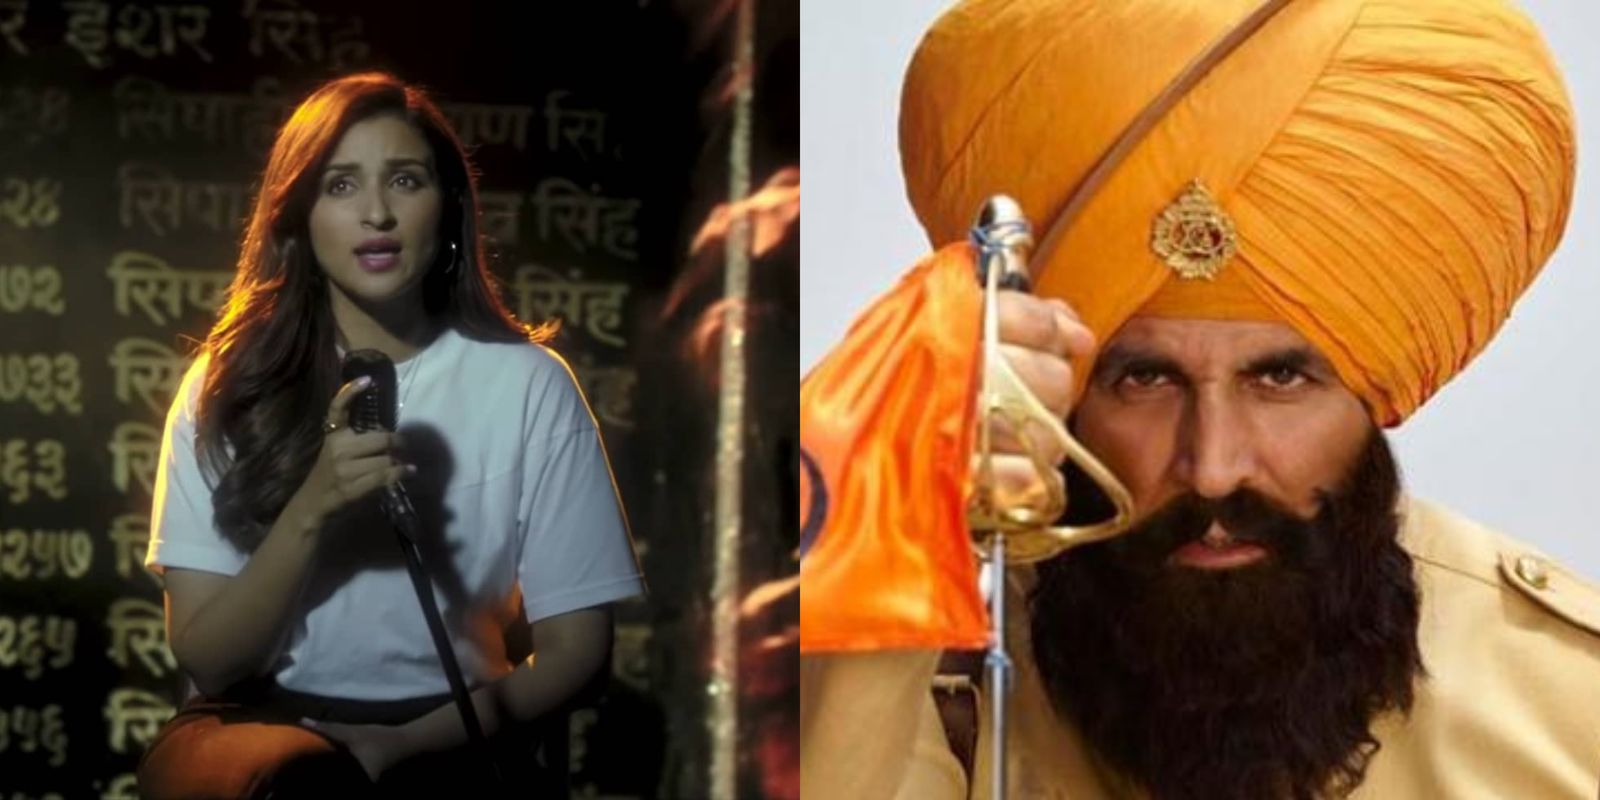 परिणीति चोपड़ा के गाए 'तेरी मिट्टी' गाने में, 'केसरी' फिल्म की कहानी का पूरा भाव छुपा है !